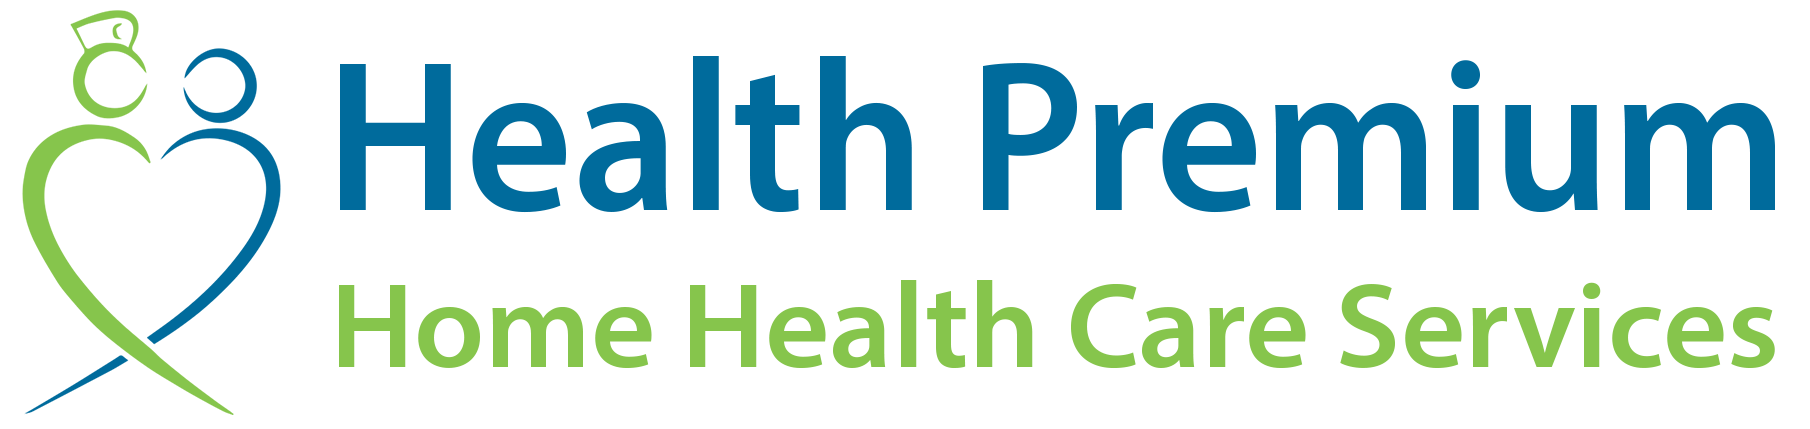 Health Premium